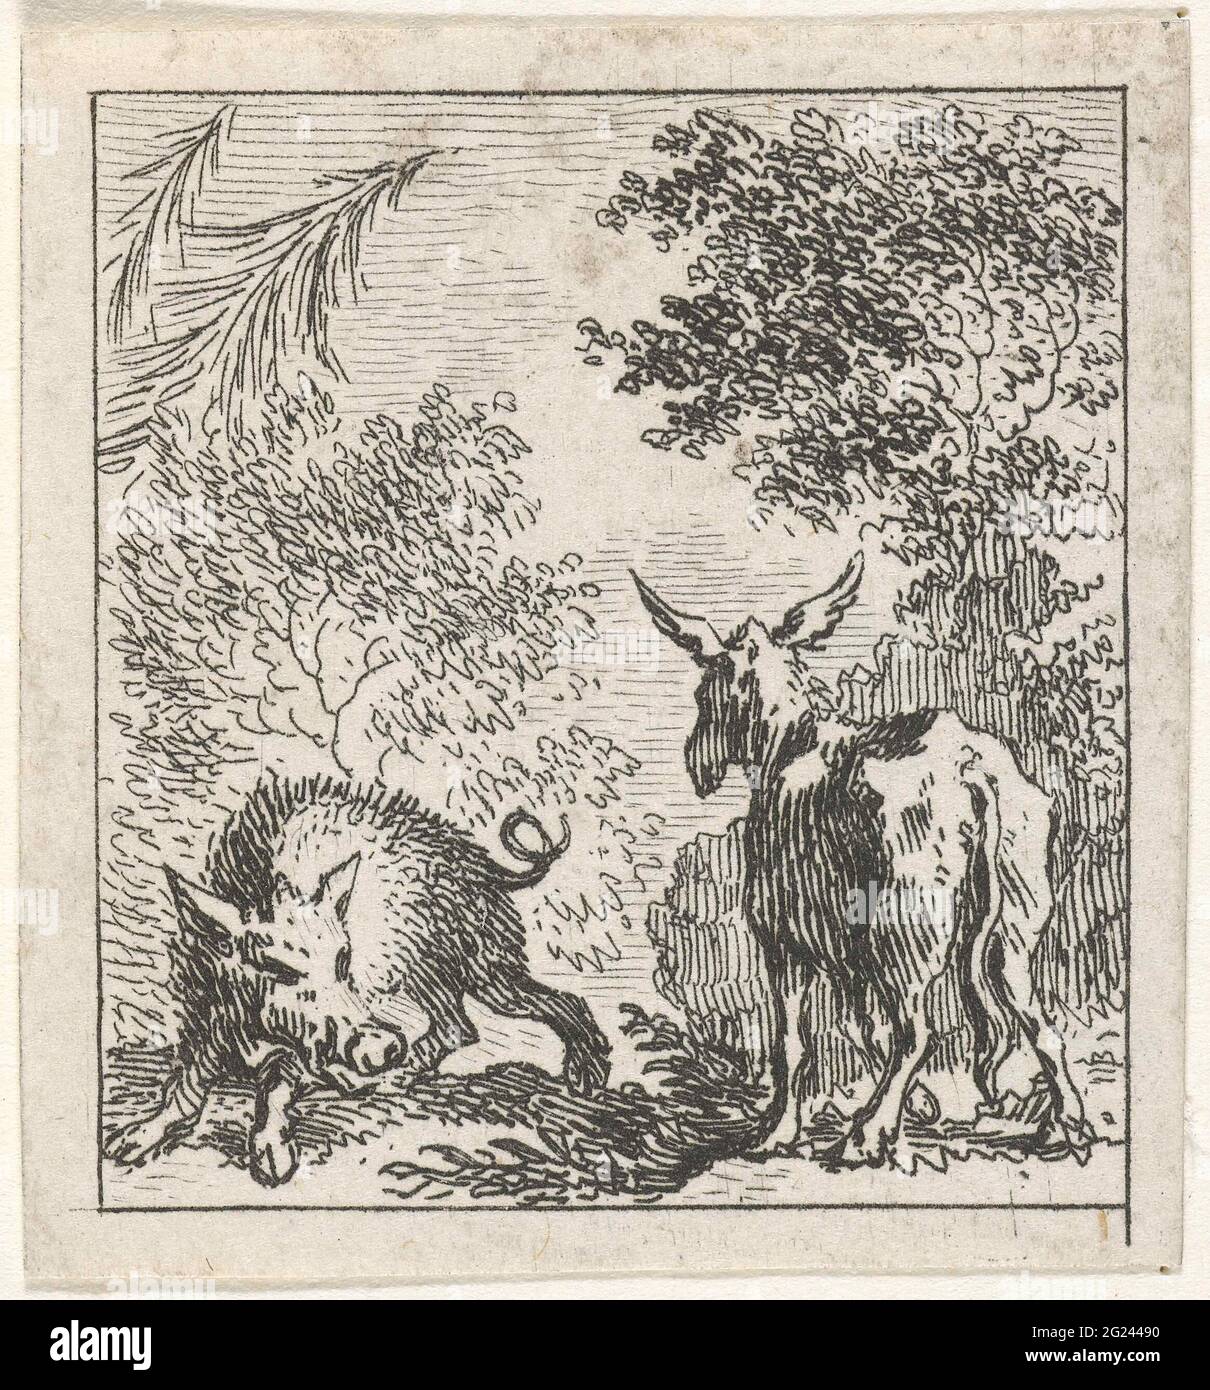 Fabul von Esel und Wildschwein; Illustrationen zu Fabber-Geschichten aus Phaedrus. Ein Esel und ein Wildschwein stehen sich in einem Wald gegenüber. Diese Illustration ist an den aesopischen Fabeln des lateinischen Dichters phaedrus gemacht. Stockfoto